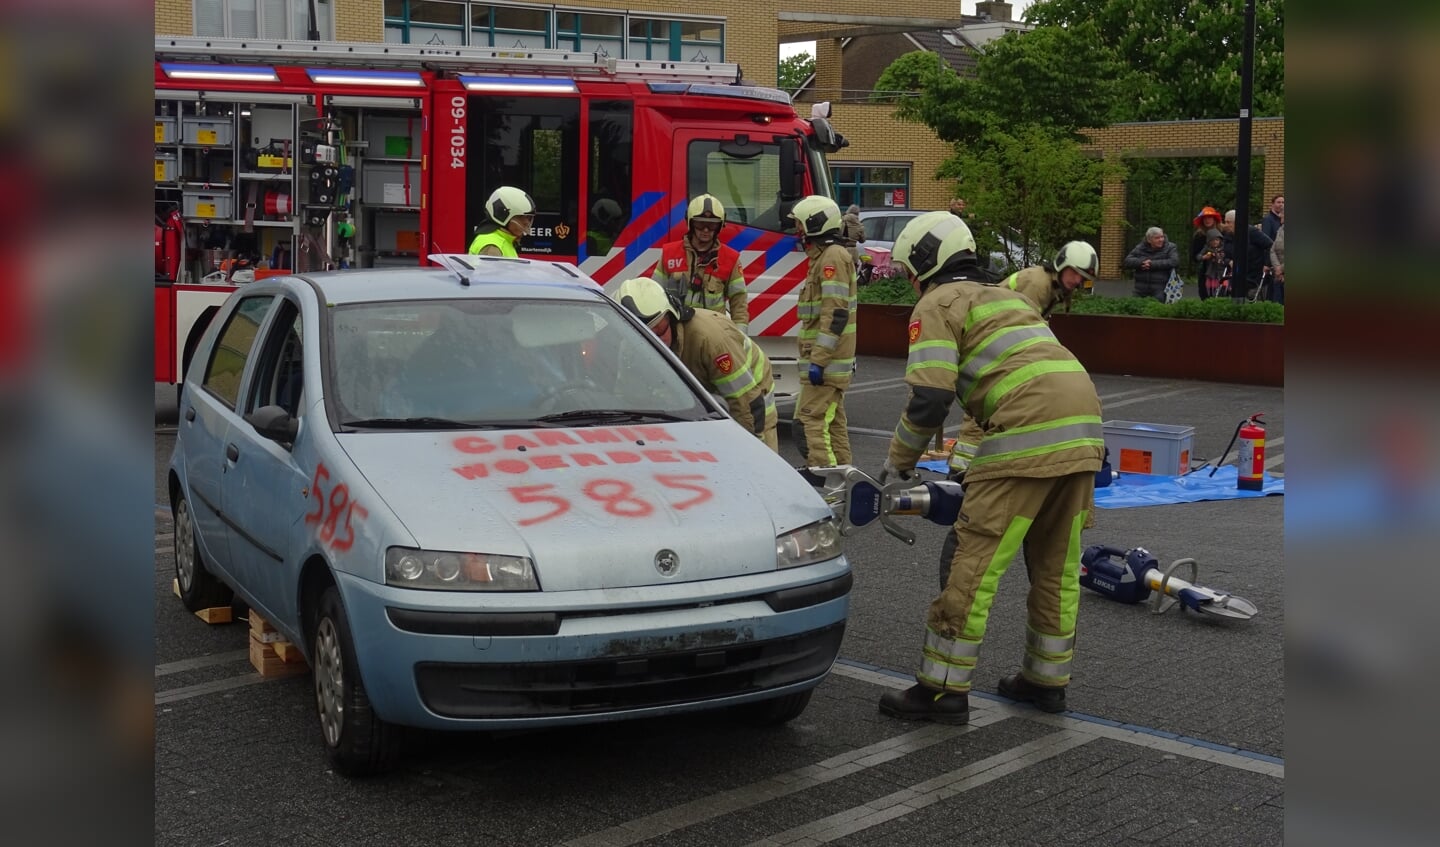 Brandweer Maartensdijk gaf een demonstratie om een bekneld persoon uit een auto te bevrijden. De brandweer gaf toelichting op alle acties, die werden uitgevoerd.[KD]